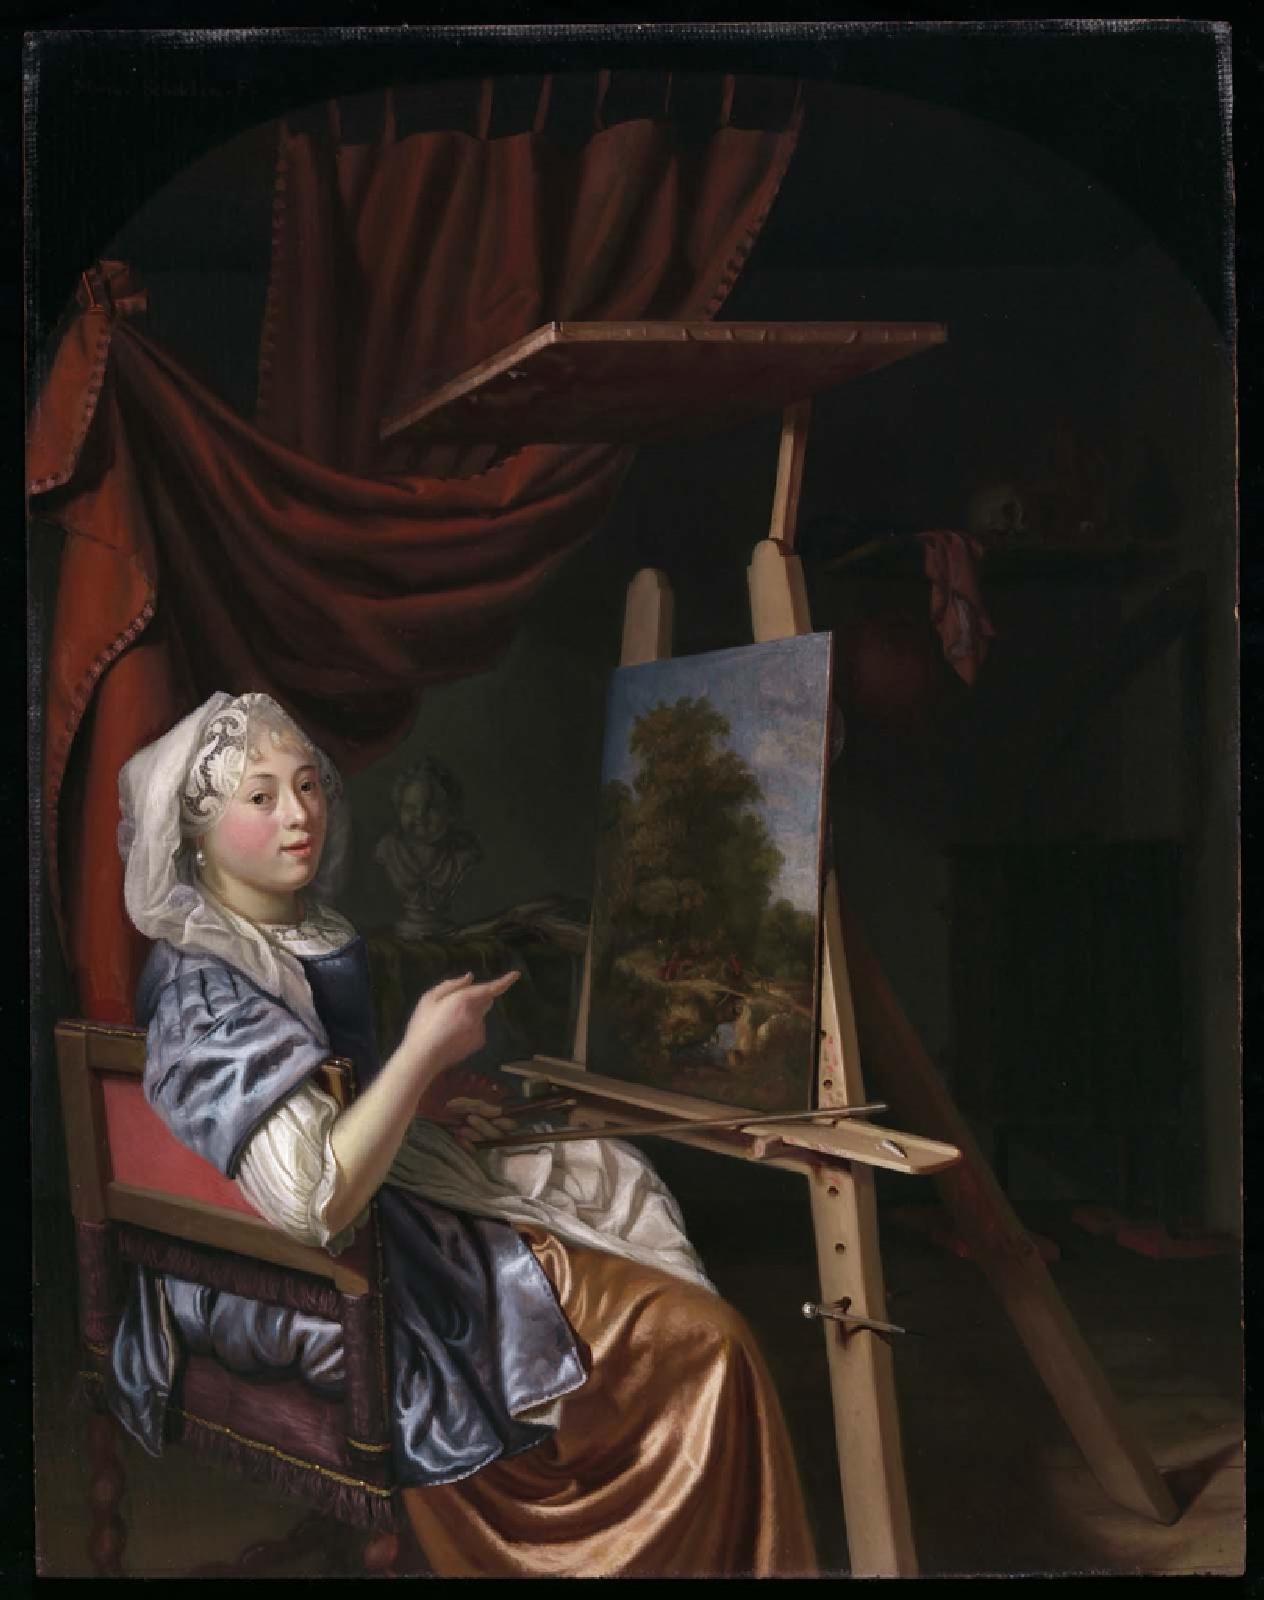 작업실에 있는 화가의 자화상 (Self-Portrait of the Artist in Her Studio) by Maria Schalcken - 1680년경 - 44.1 x 34.3 cm 